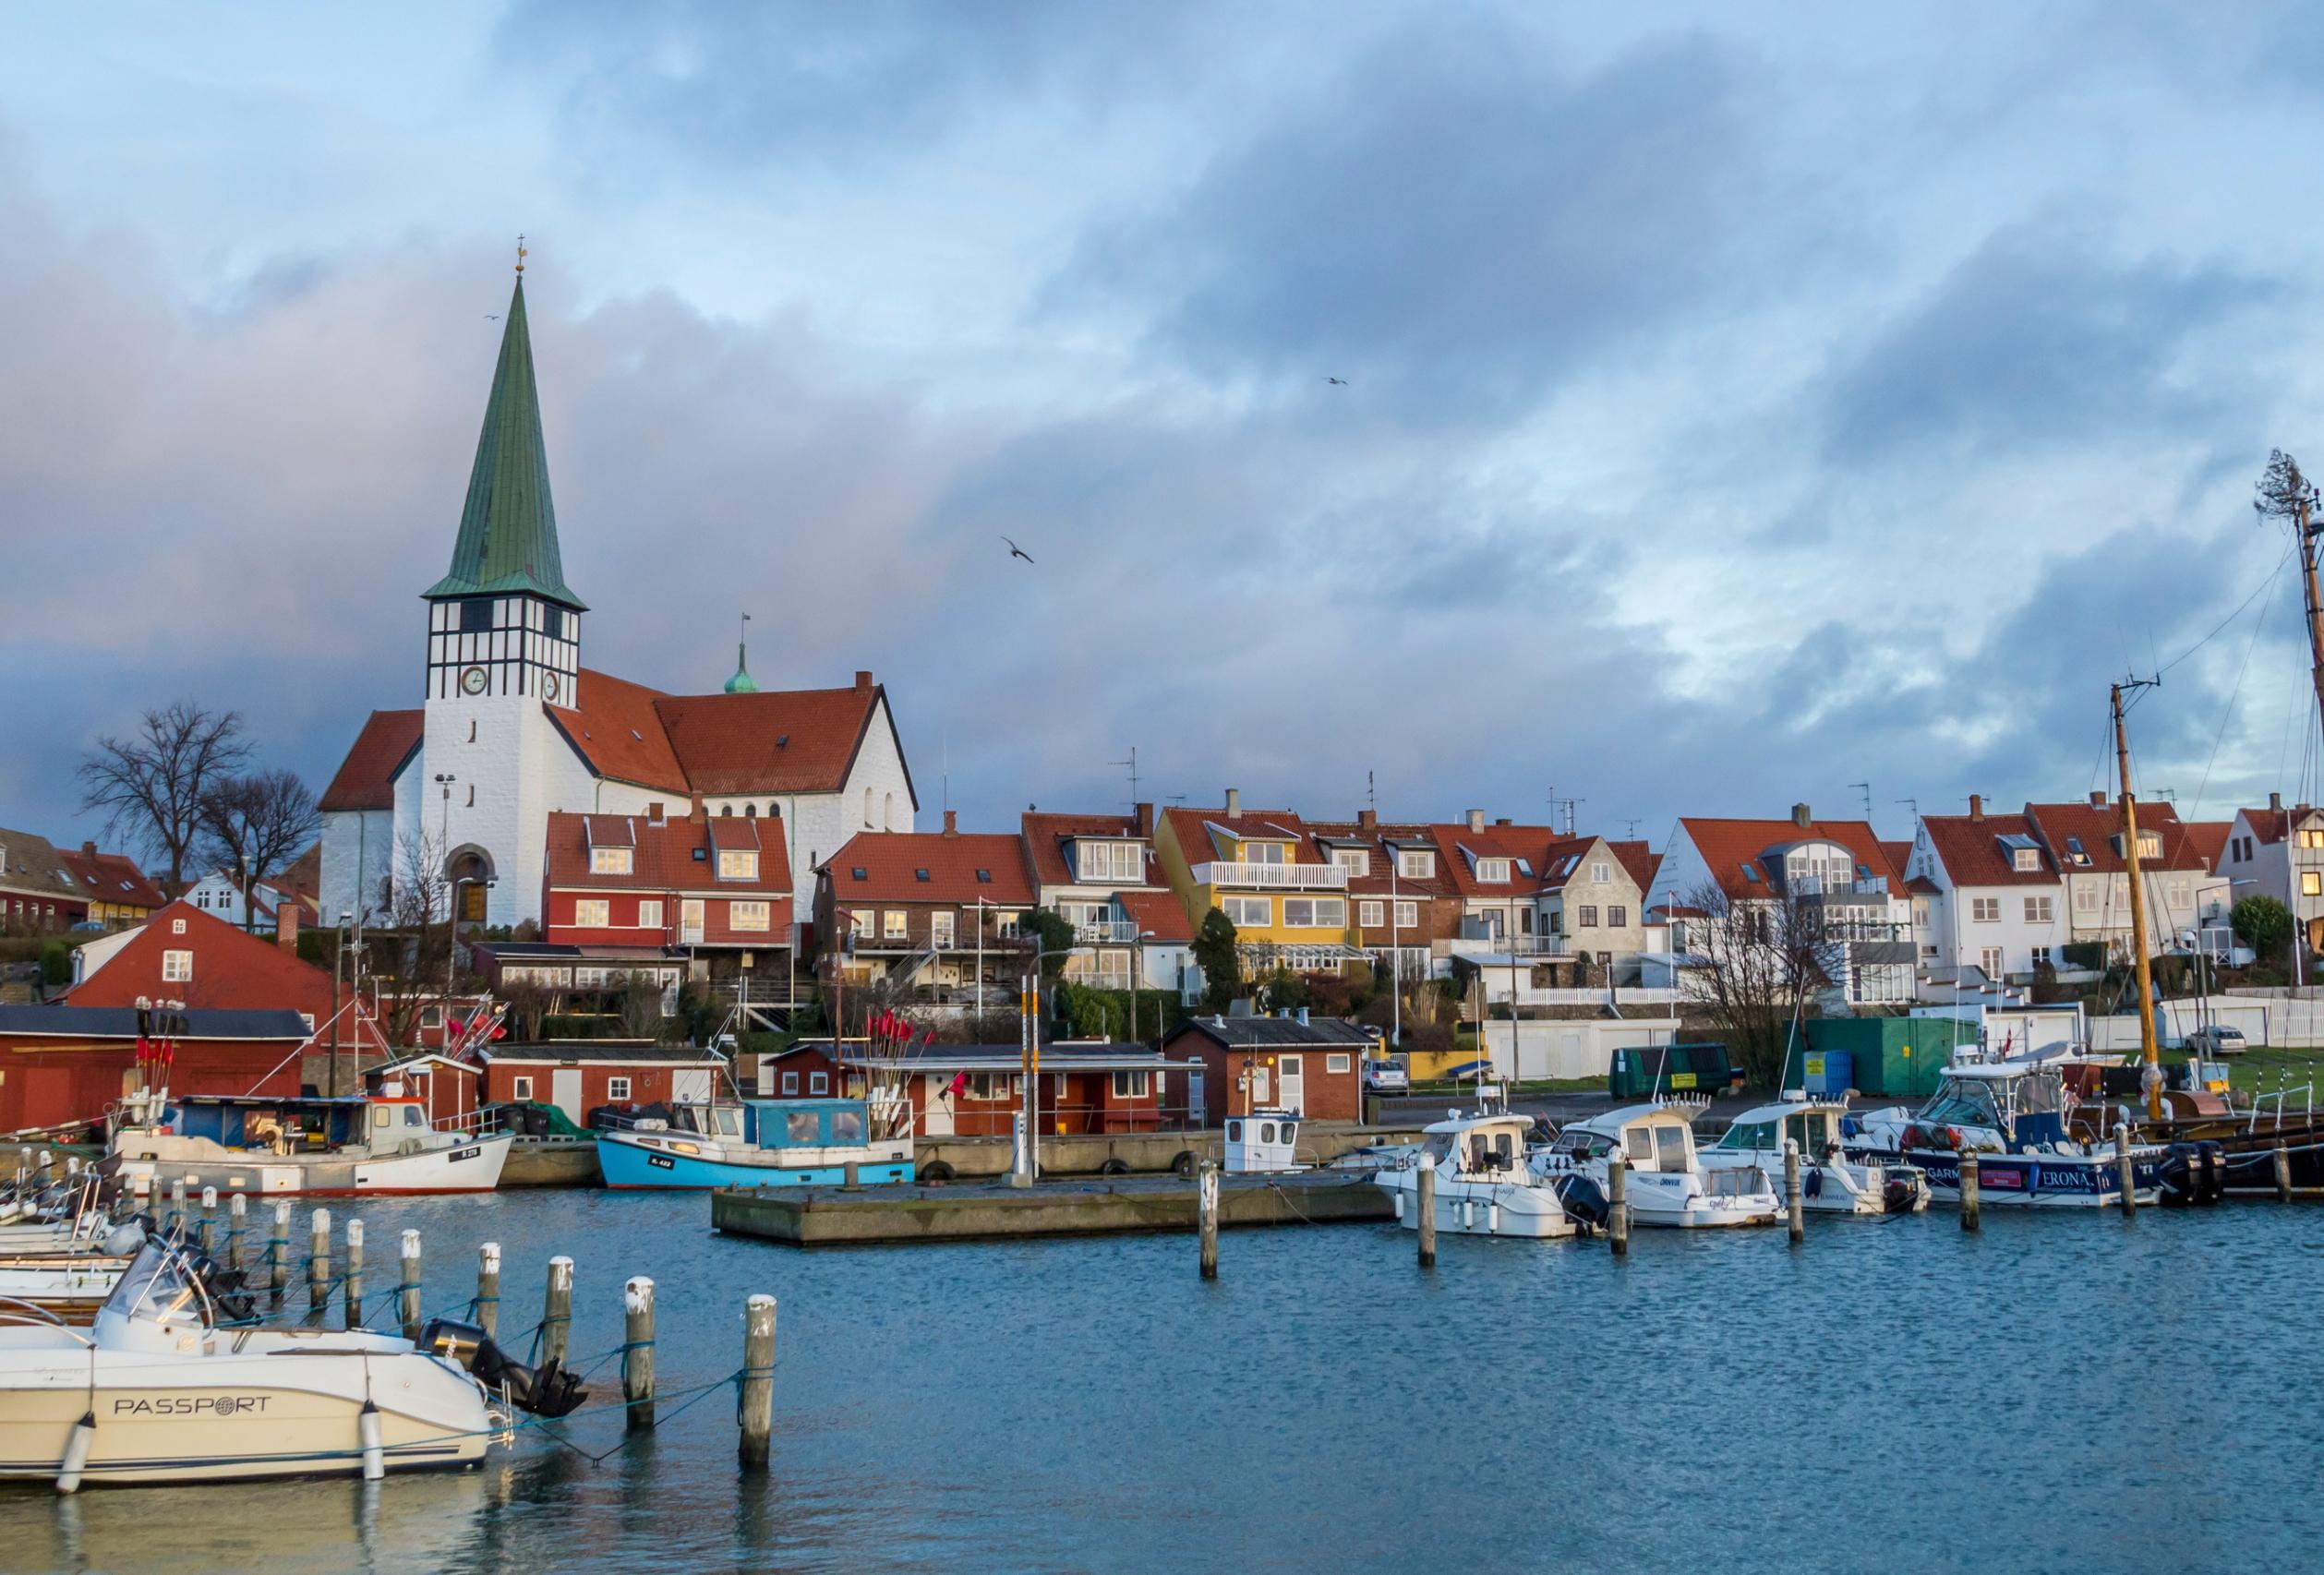  Rønne ist die grösste Stadt und der wichtigste Hafen auf der dänischen Insel Bornholm. 